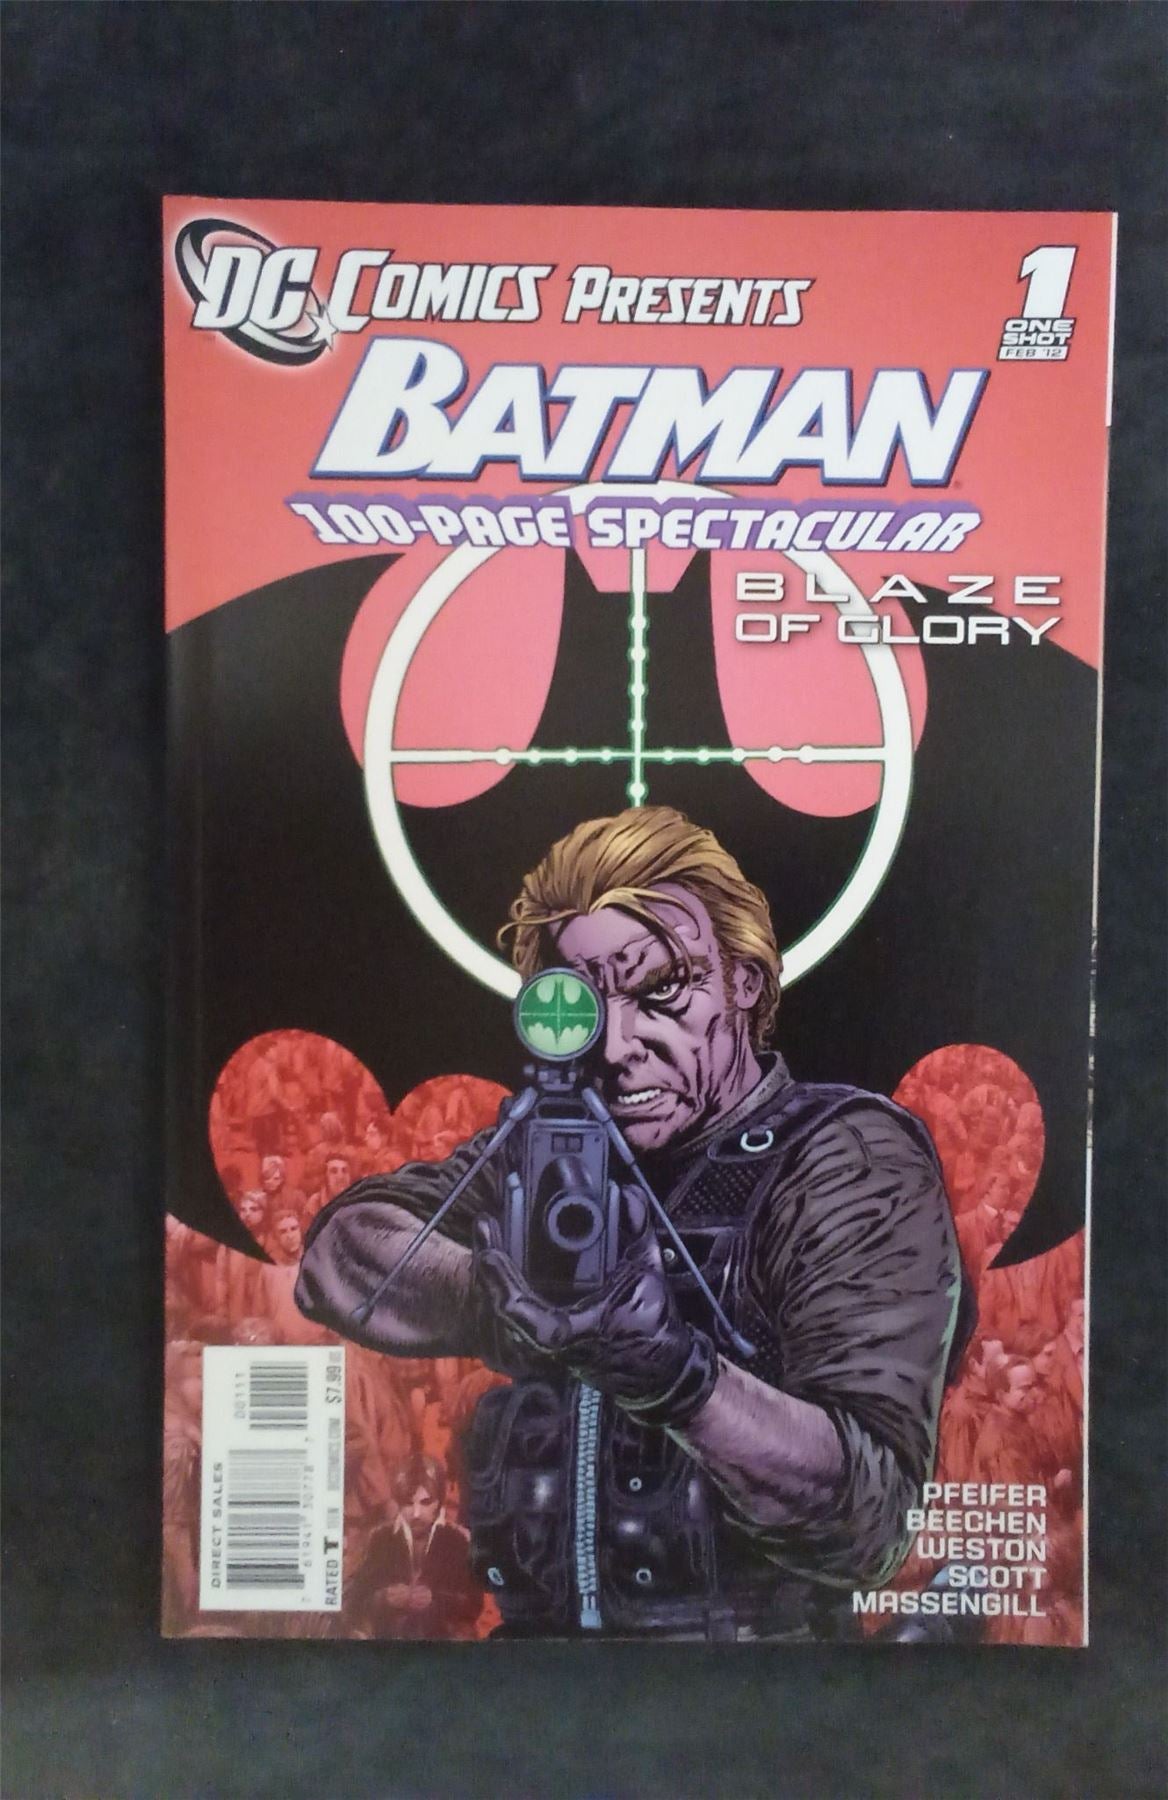 DC Comics Presents: Batman: Blaze of Glory 2012 dc-comics Comic Book